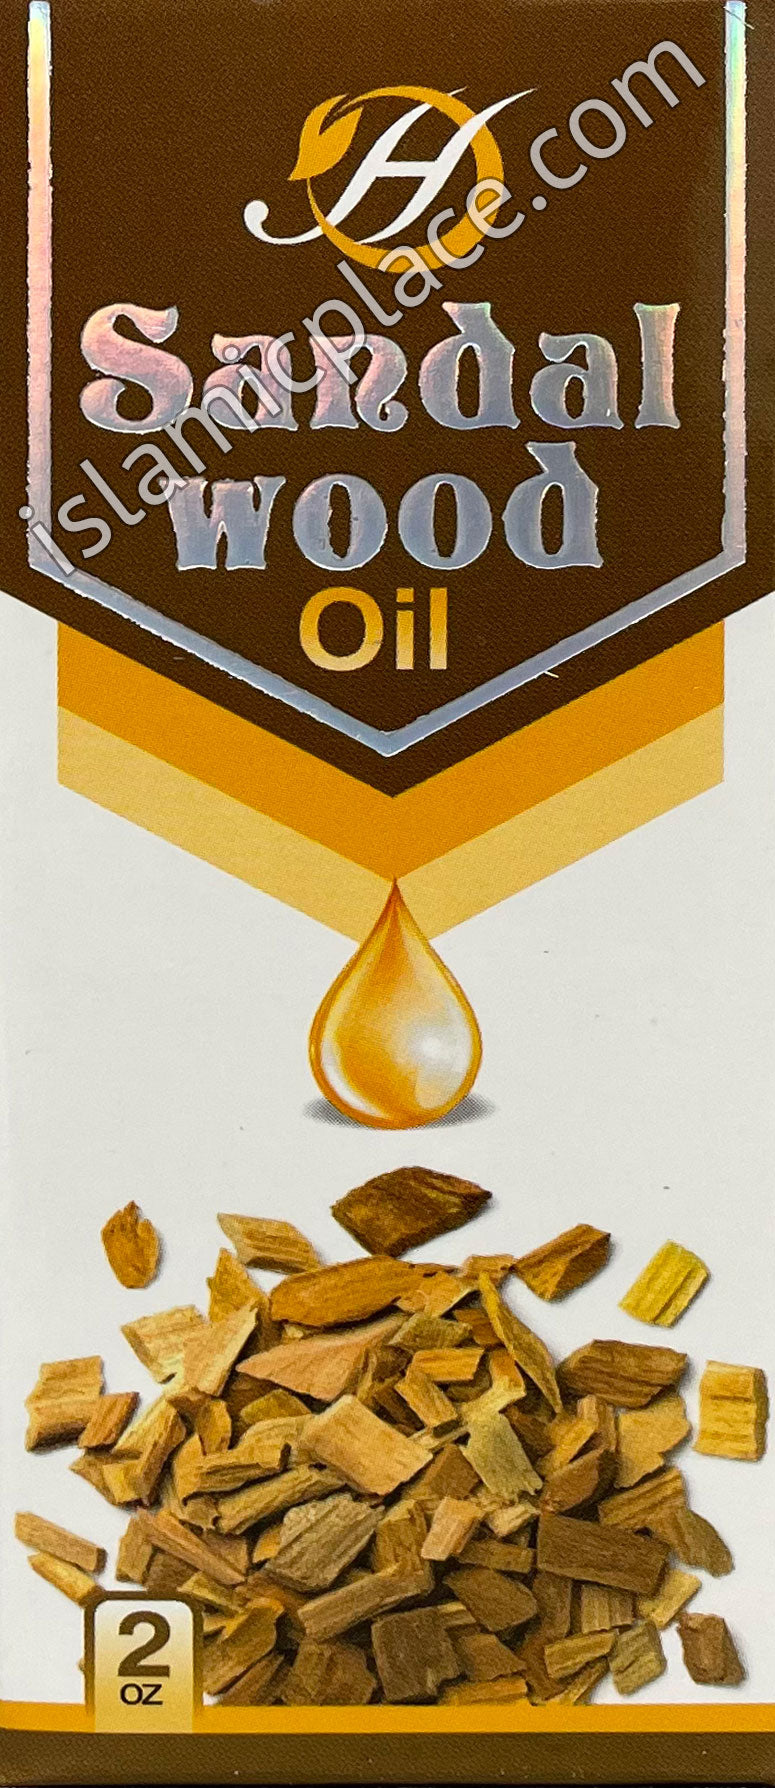 Sandalwood Oil 2 oz - Natural